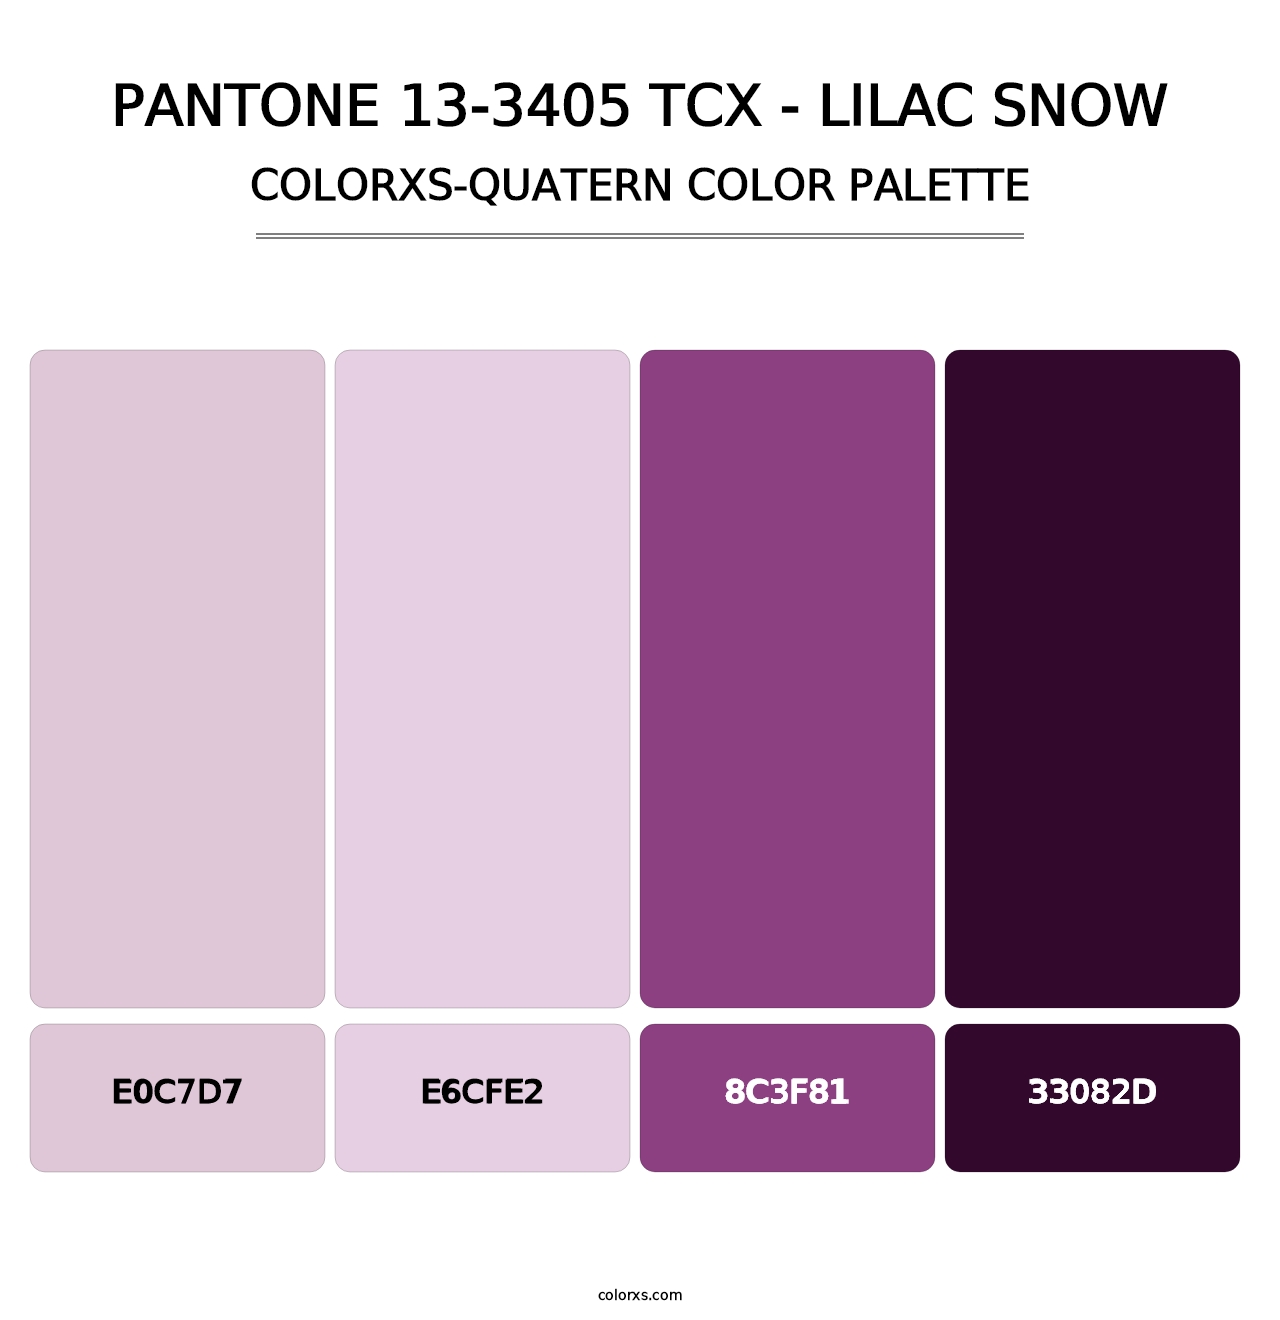 PANTONE 13-3405 TCX - Lilac Snow - Colorxs Quatern Palette